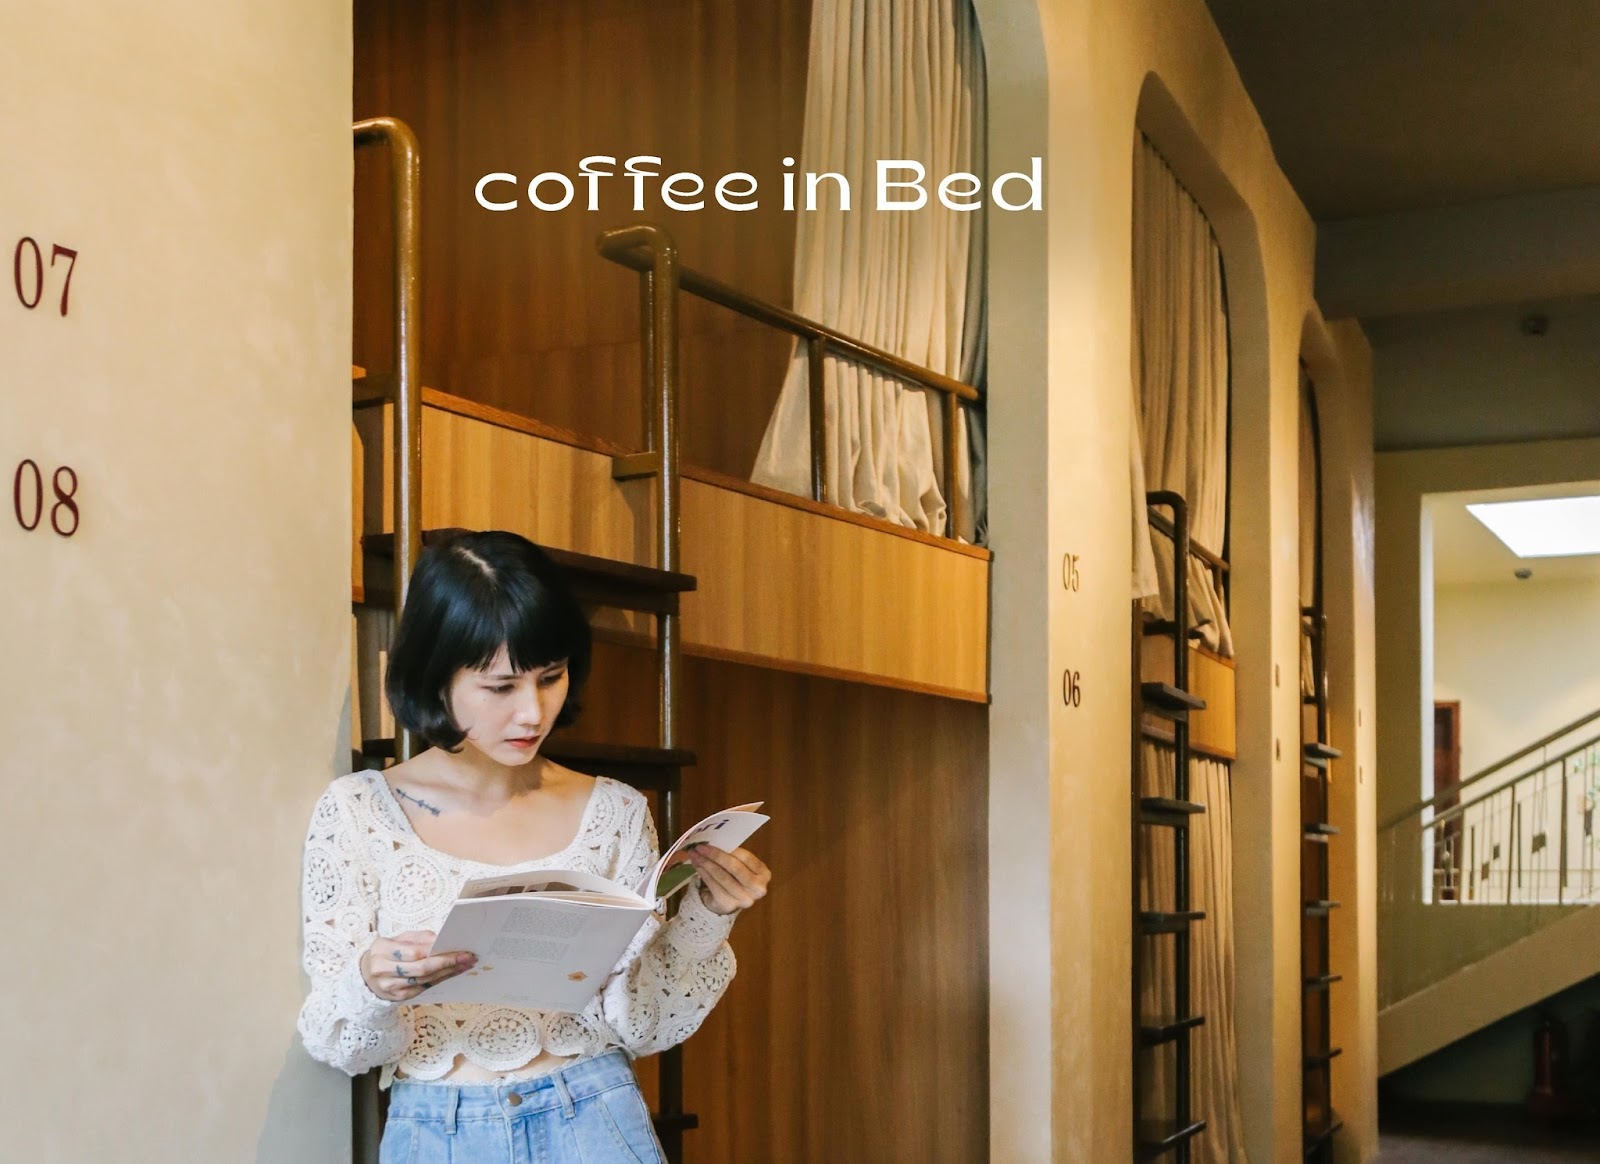 Khu vực phục vụ coffee in bed riêng tư, ấm cúng của Chidori